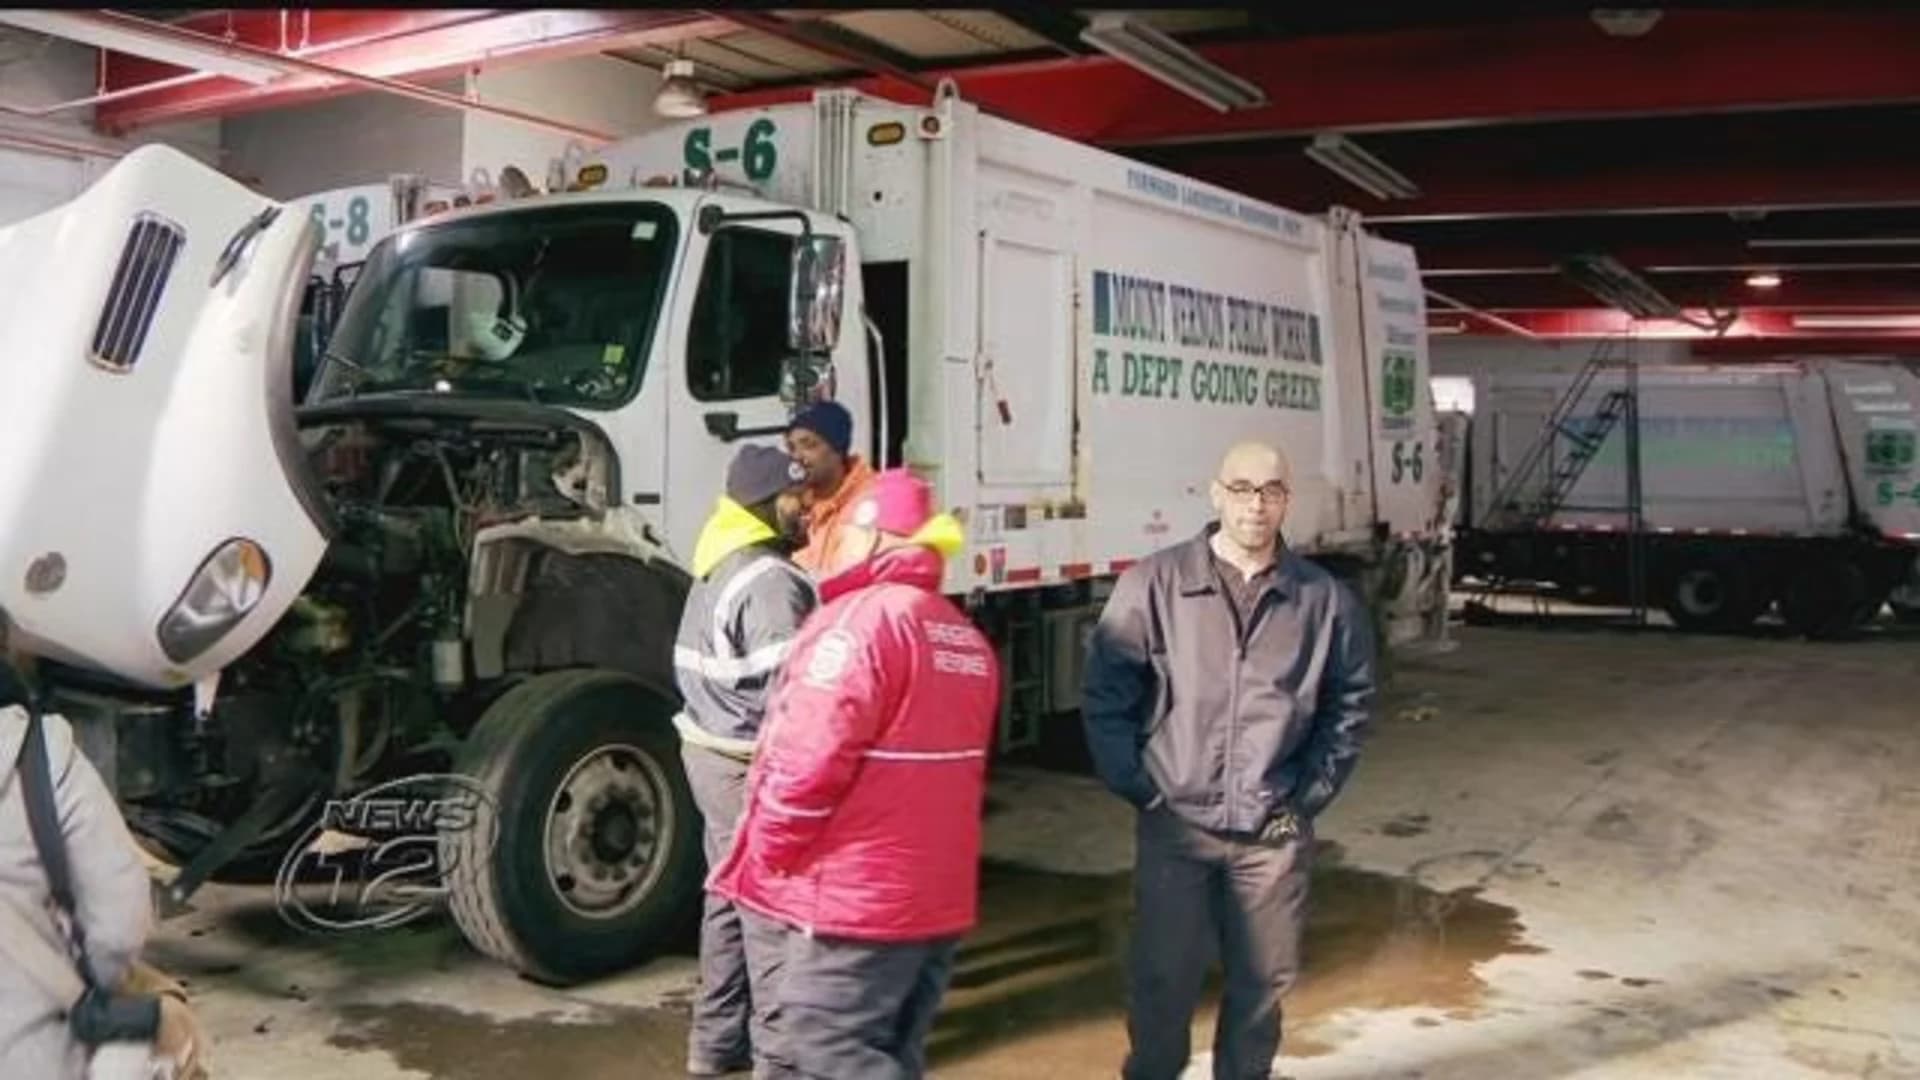 12 DPW trucks deemed unsafe, in need of repair in Mount Vernon